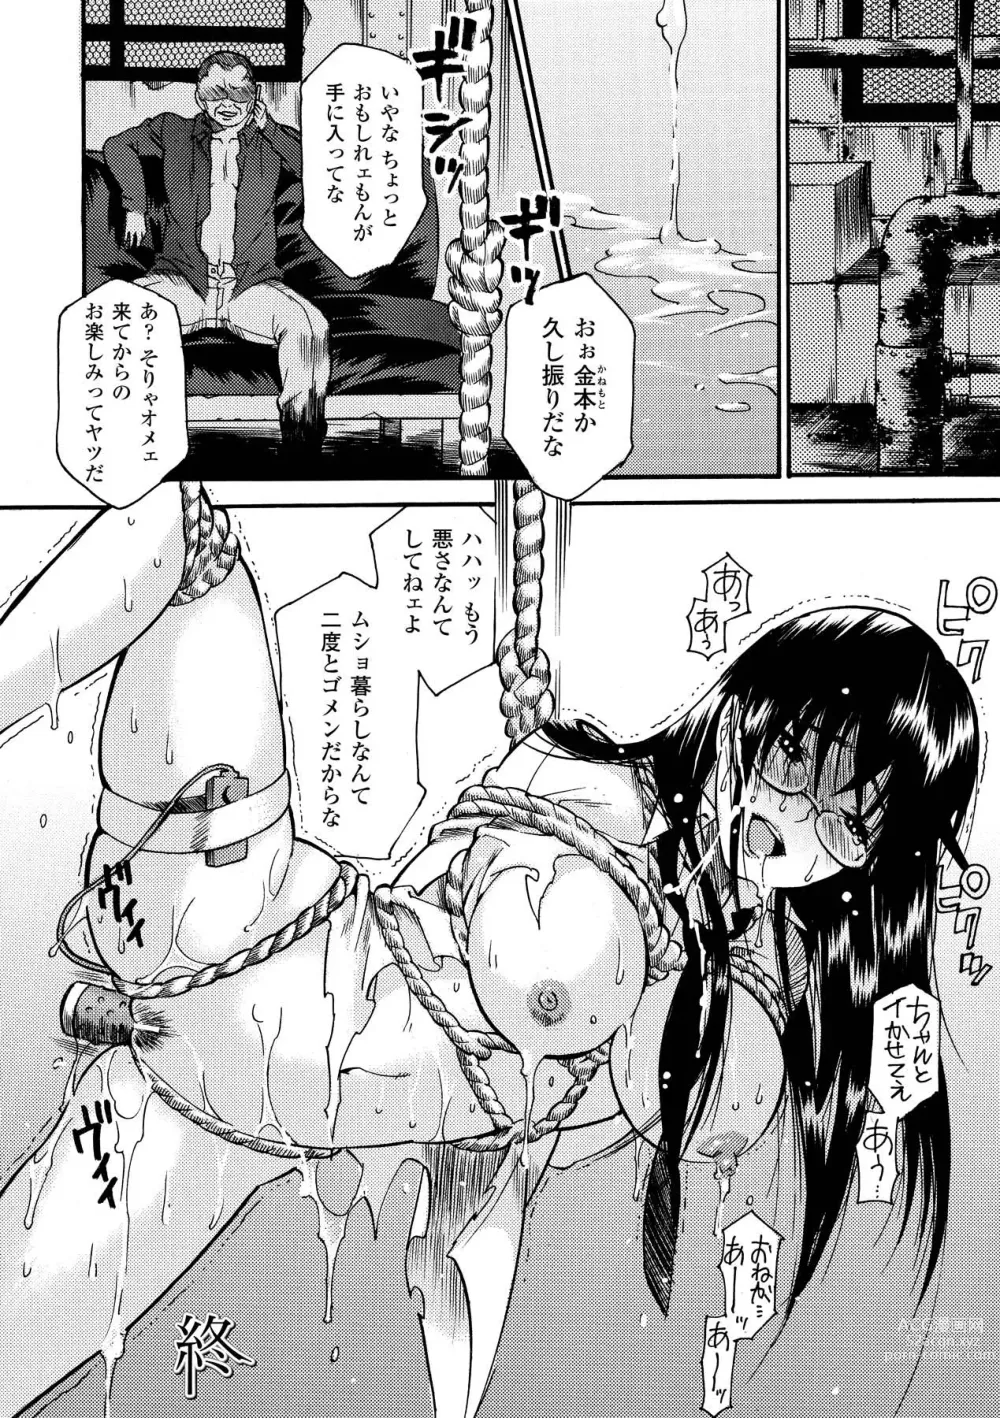 Page 20 of manga Aigan Masochist